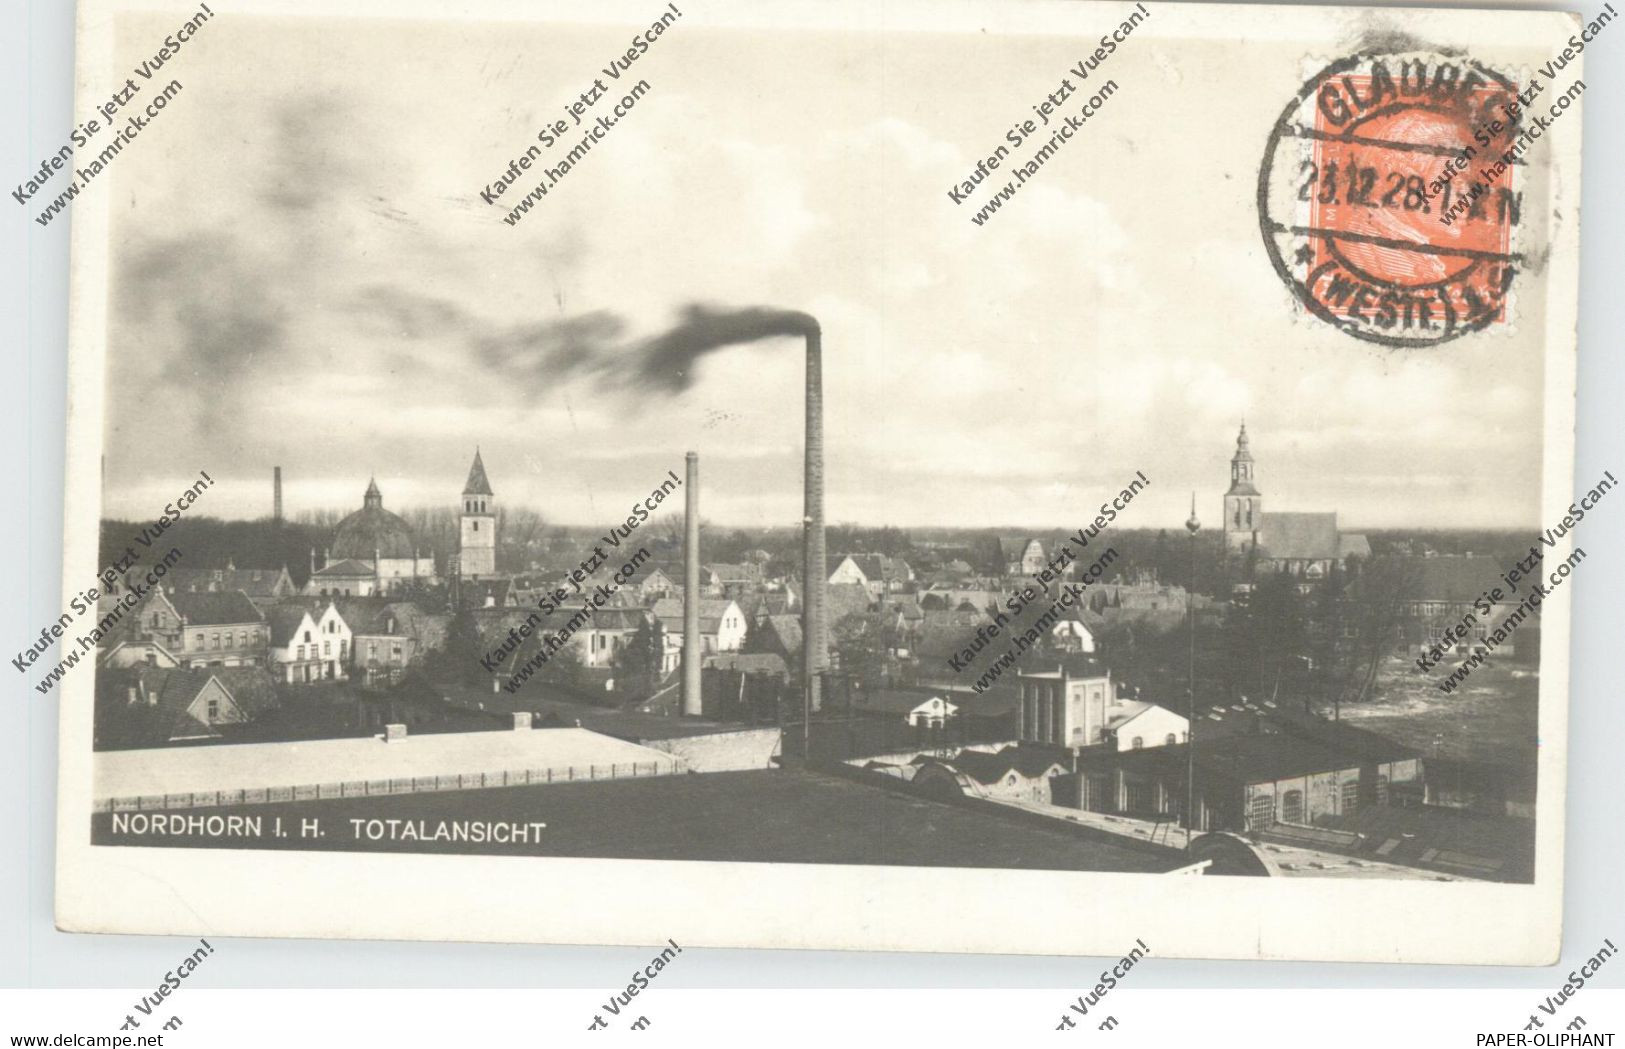 4460 NORDHORN, Gesamtansicht 1928, Rauchende Kamine - Nordhorn